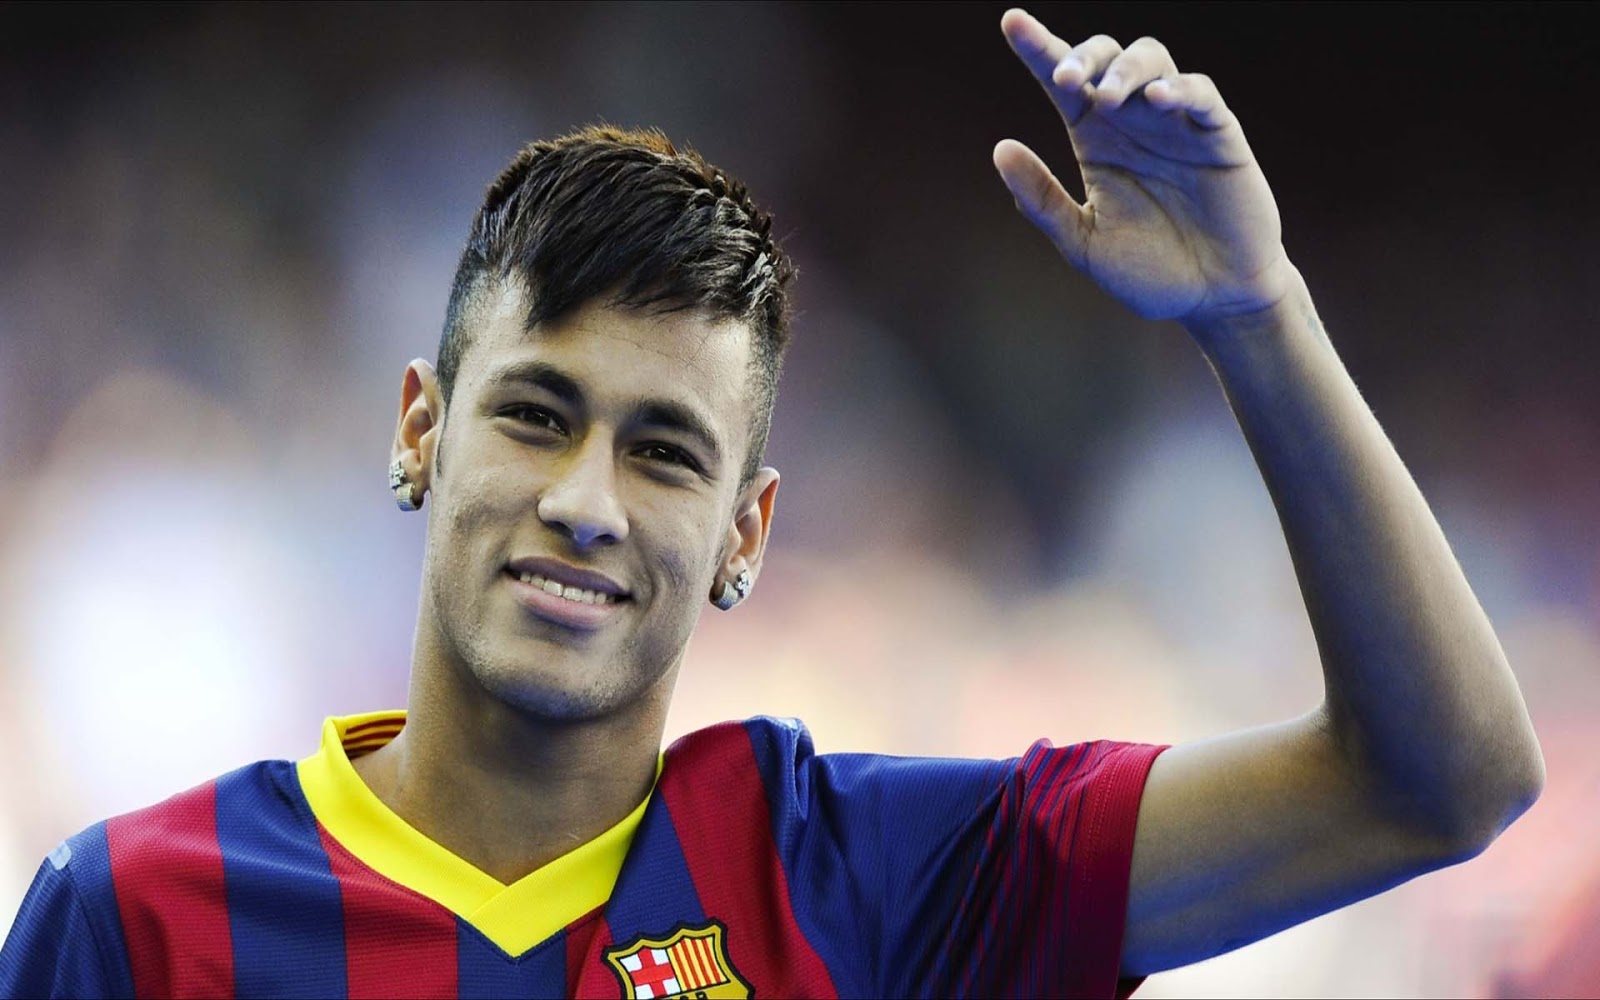 43+] Neymar HD Wallpapers 1080p - WallpaperSafari